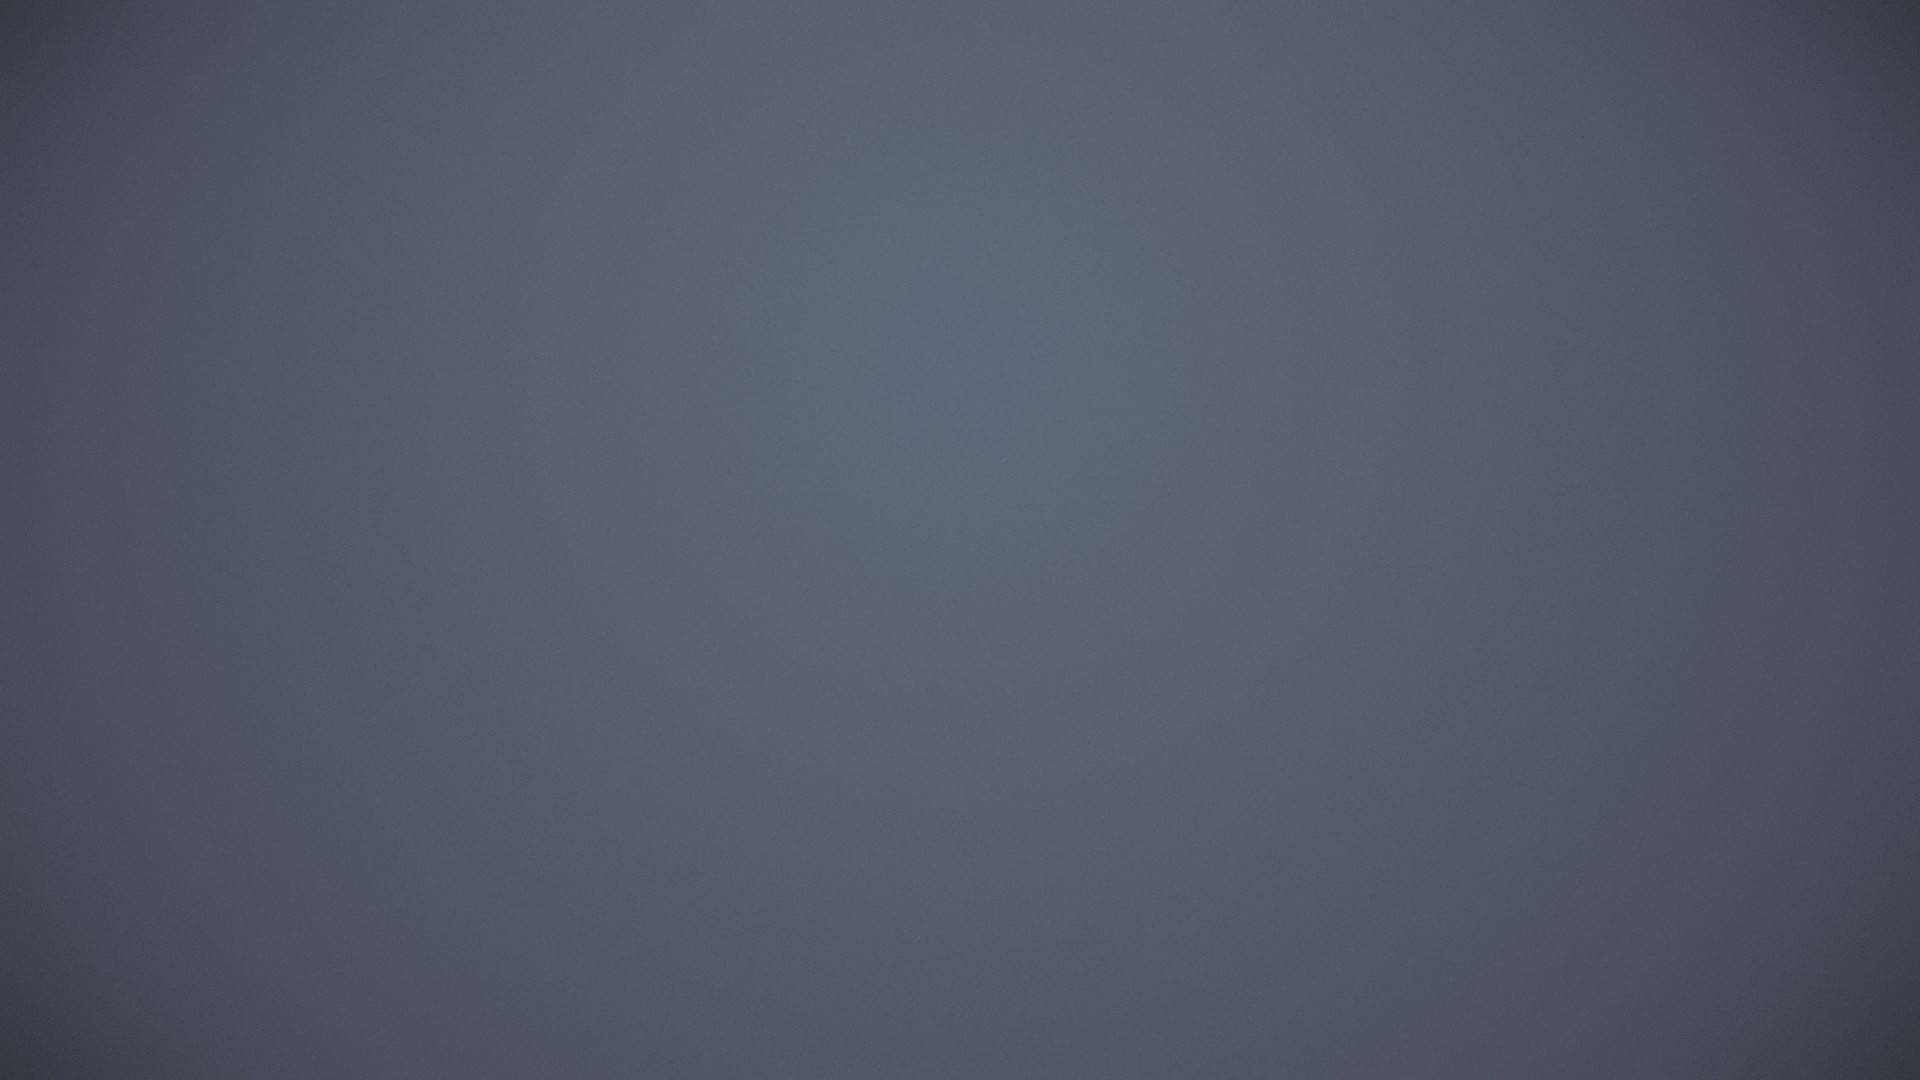 Bluish Solid Grey Background